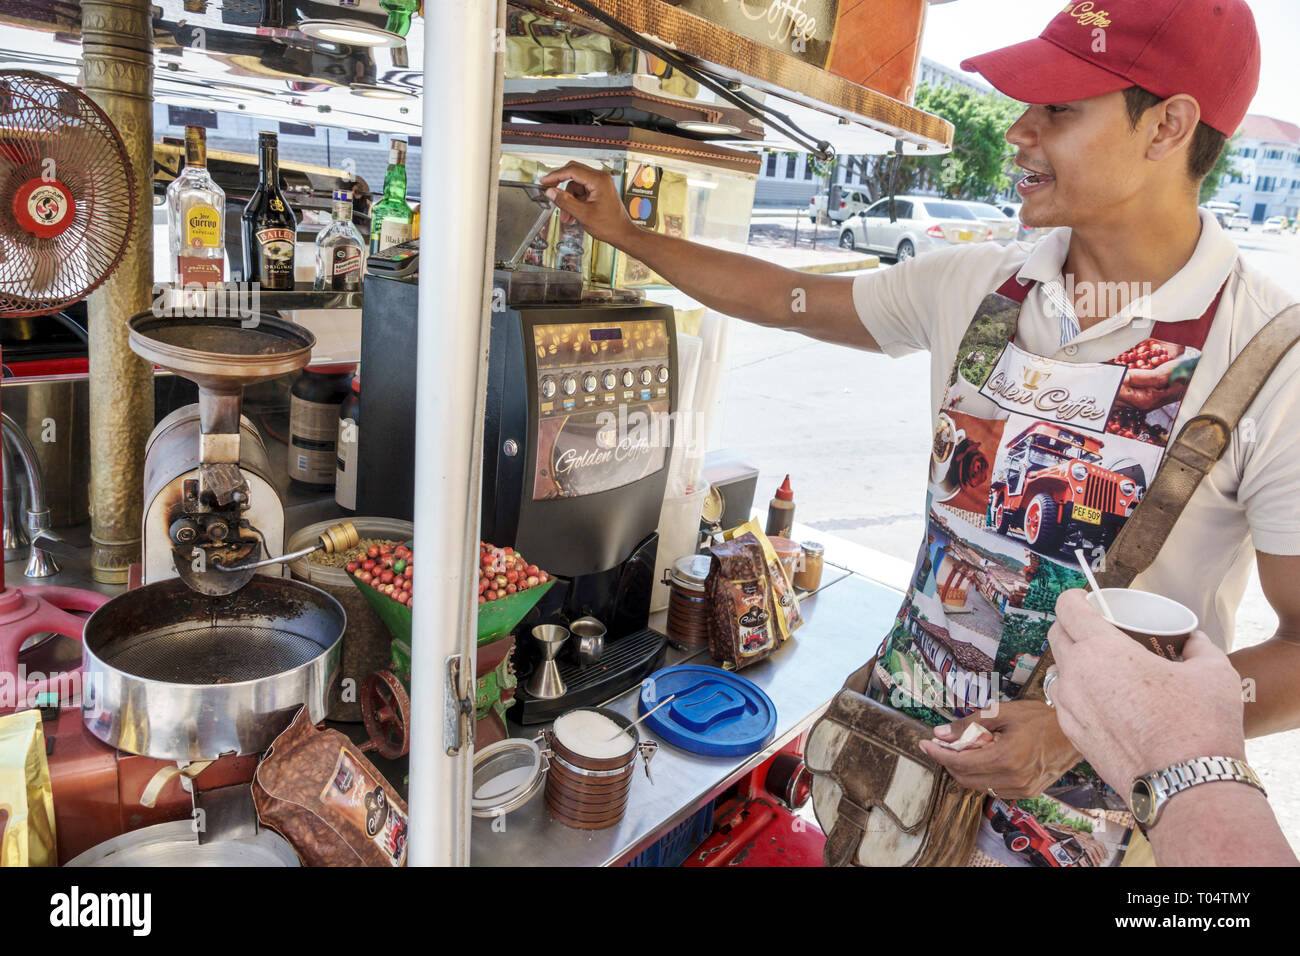 Cartagena Kolumbien, Golden Coffee, Kiosk Verkäufer, Hispanic Latino ethnische Einwanderer Minderheit, Erwachsene Erwachsene Mann Männer männlich, Besitzer m Stockfoto